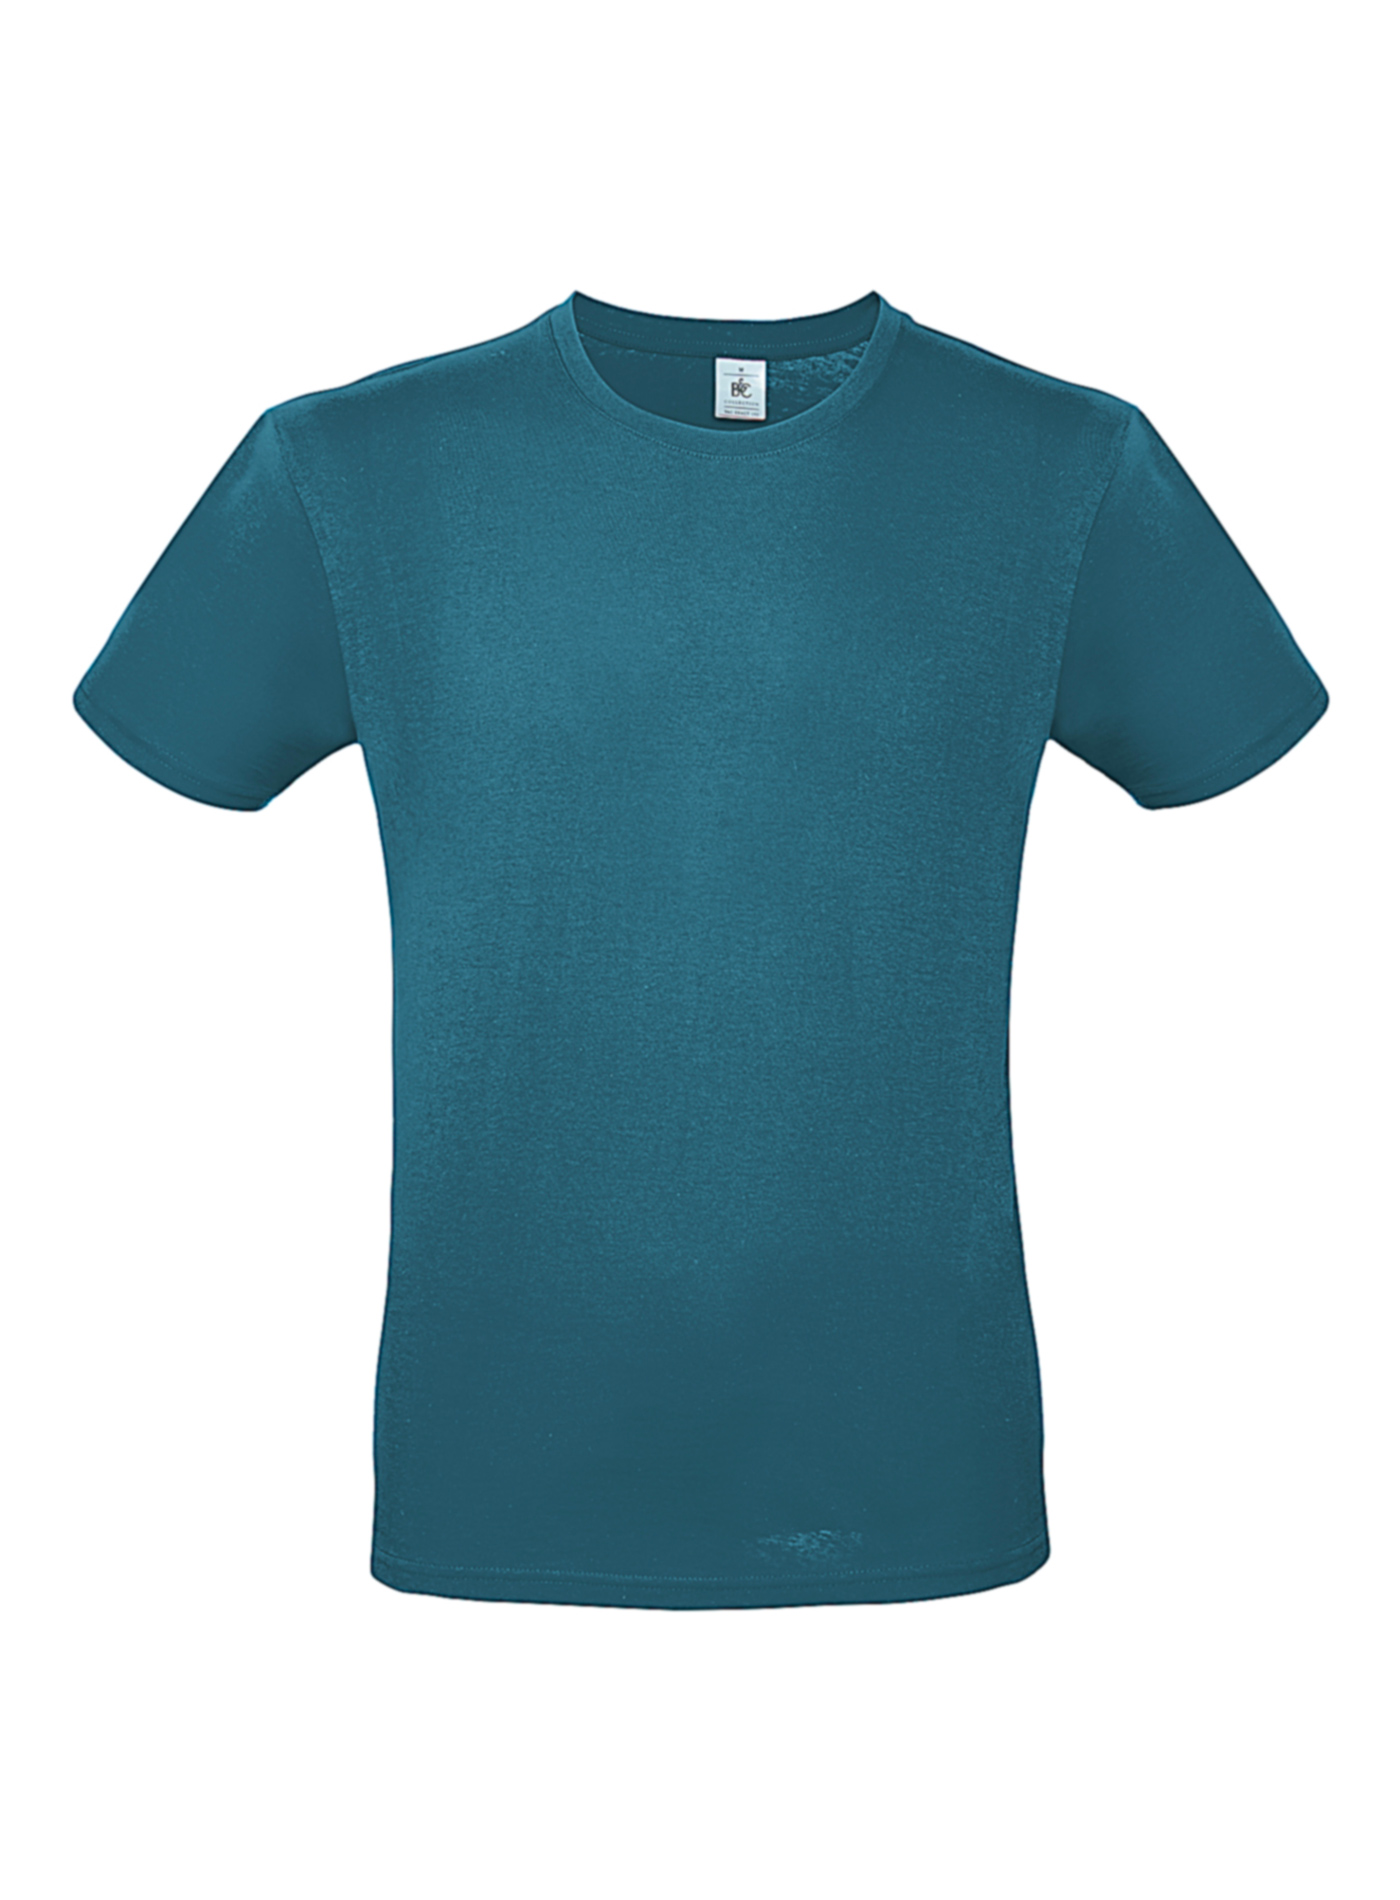 Pánské tričko B&C - Modrozelená L